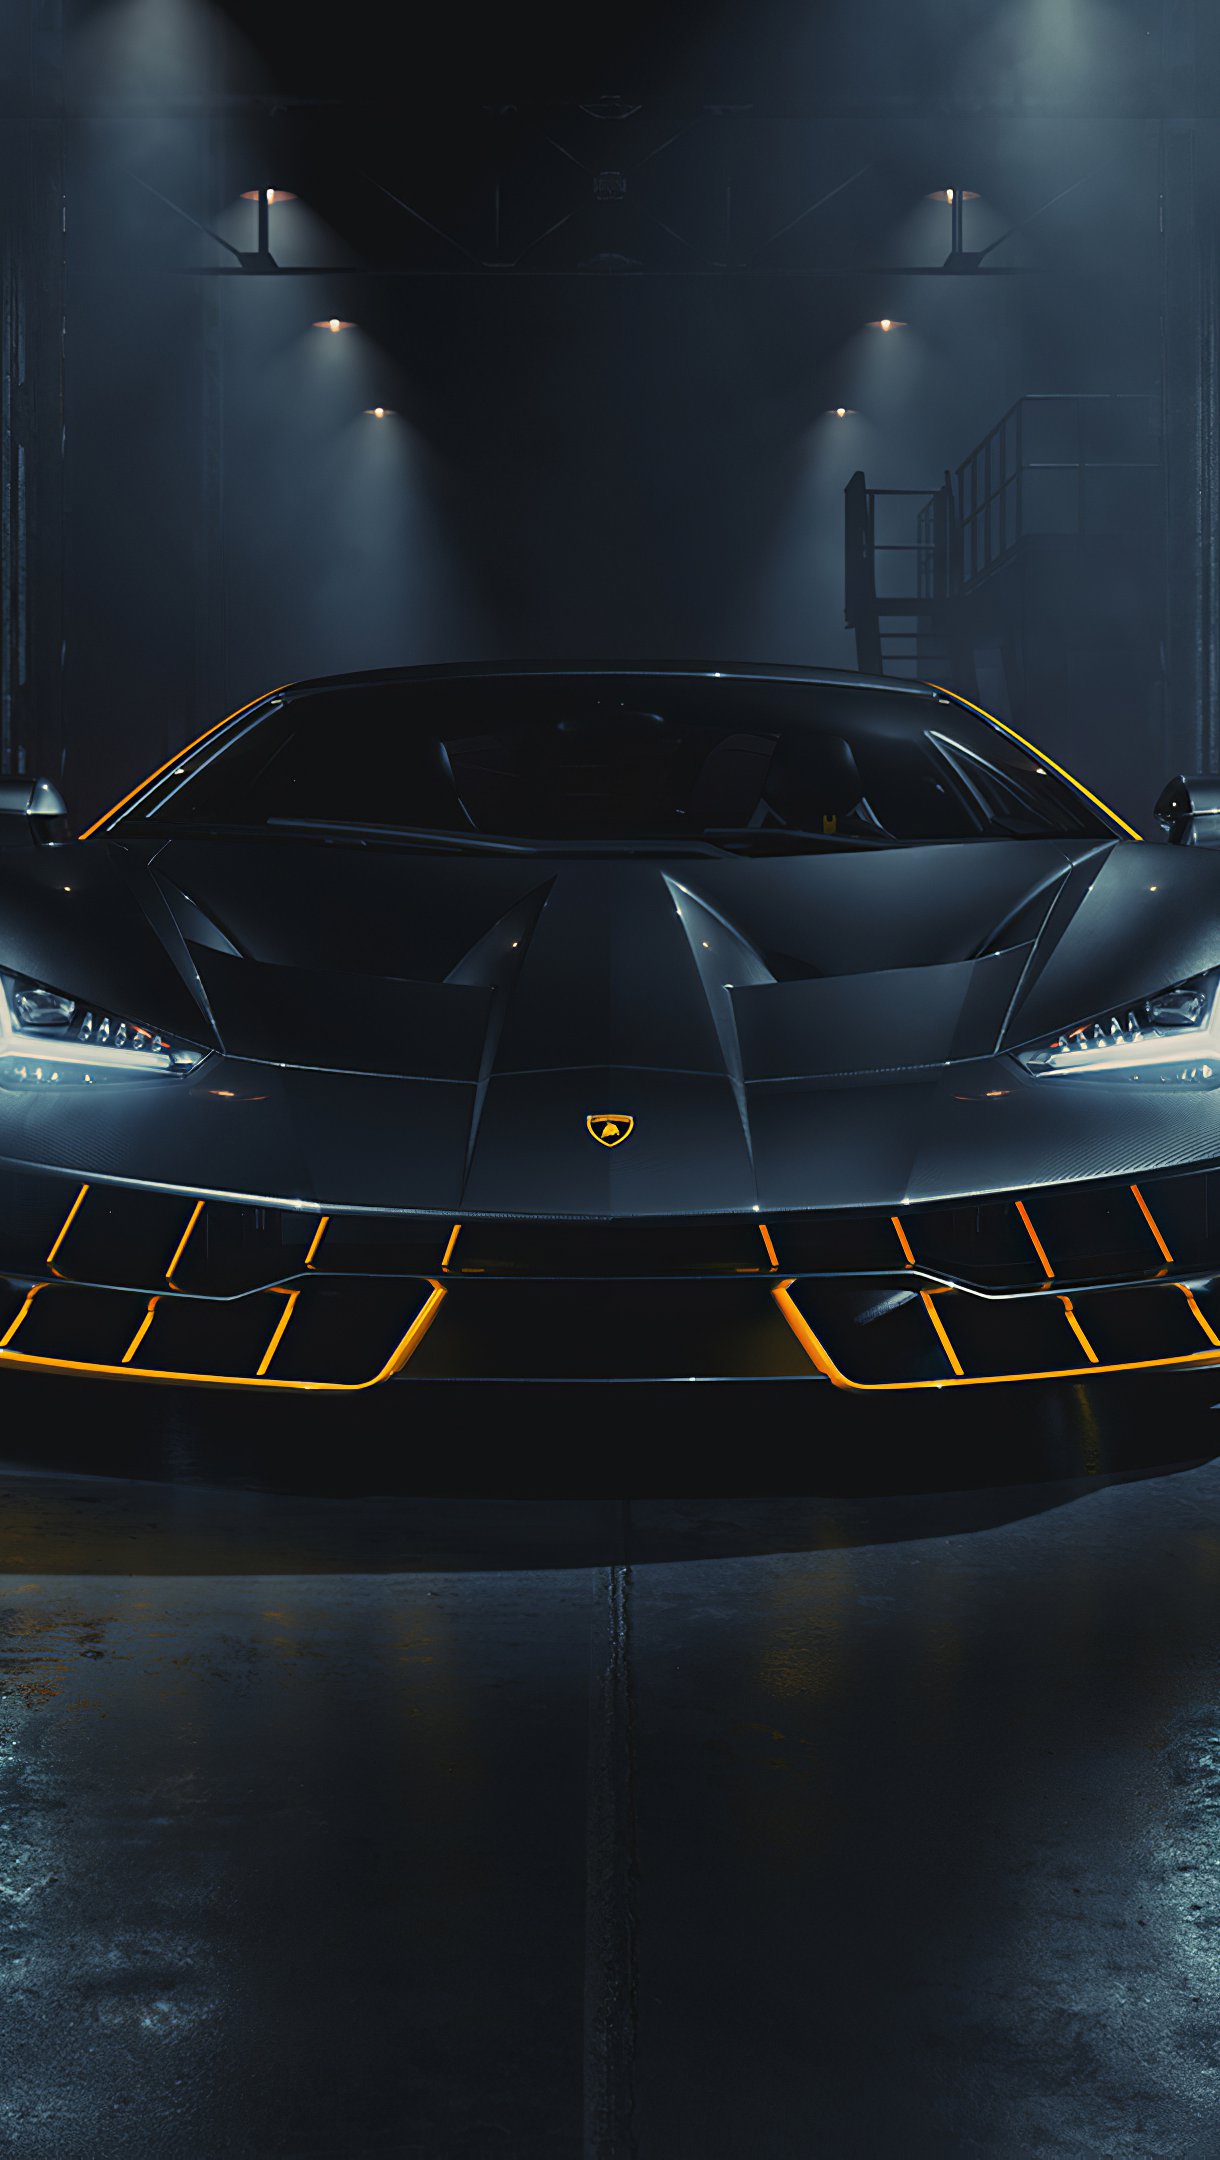 Lamborghini Centenario negro Fondo de pantalla 4k Ultra HD ID:4862